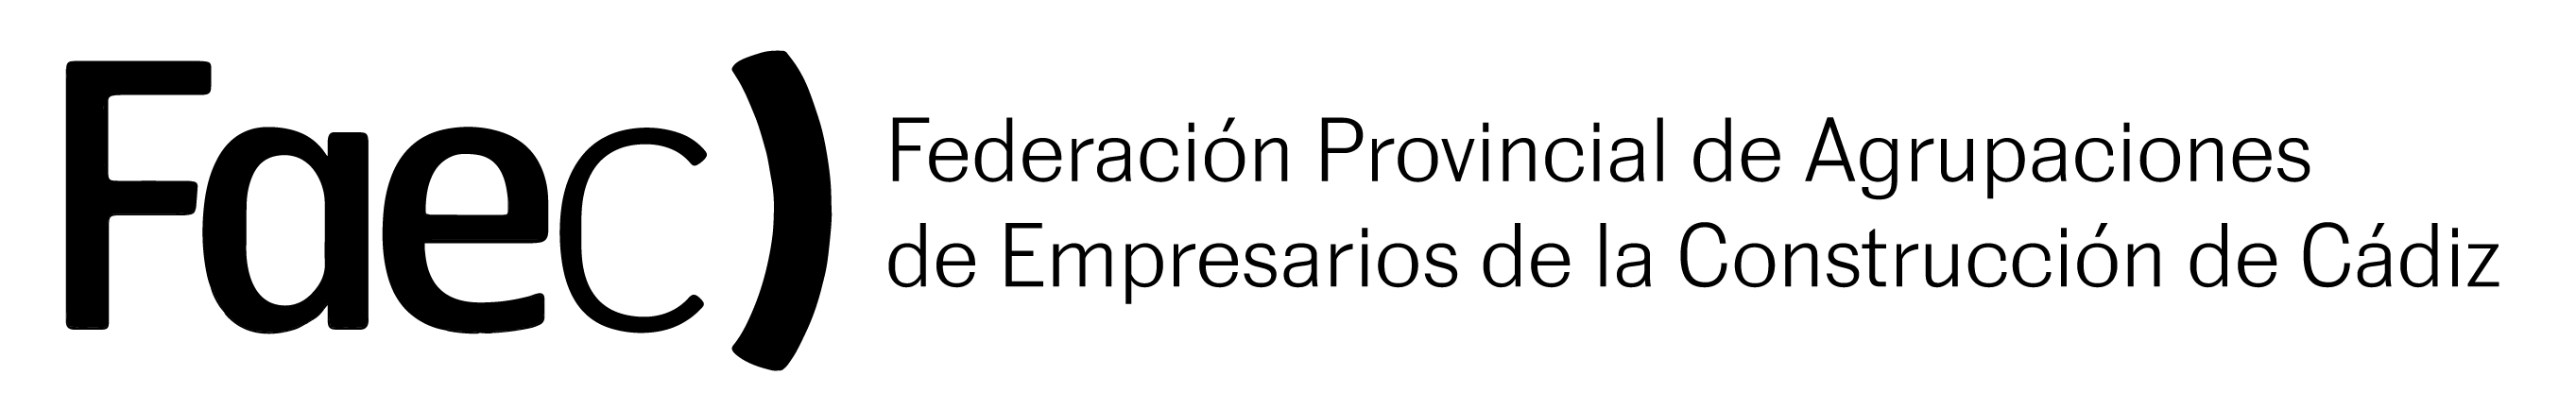 logo_FAEC_negro